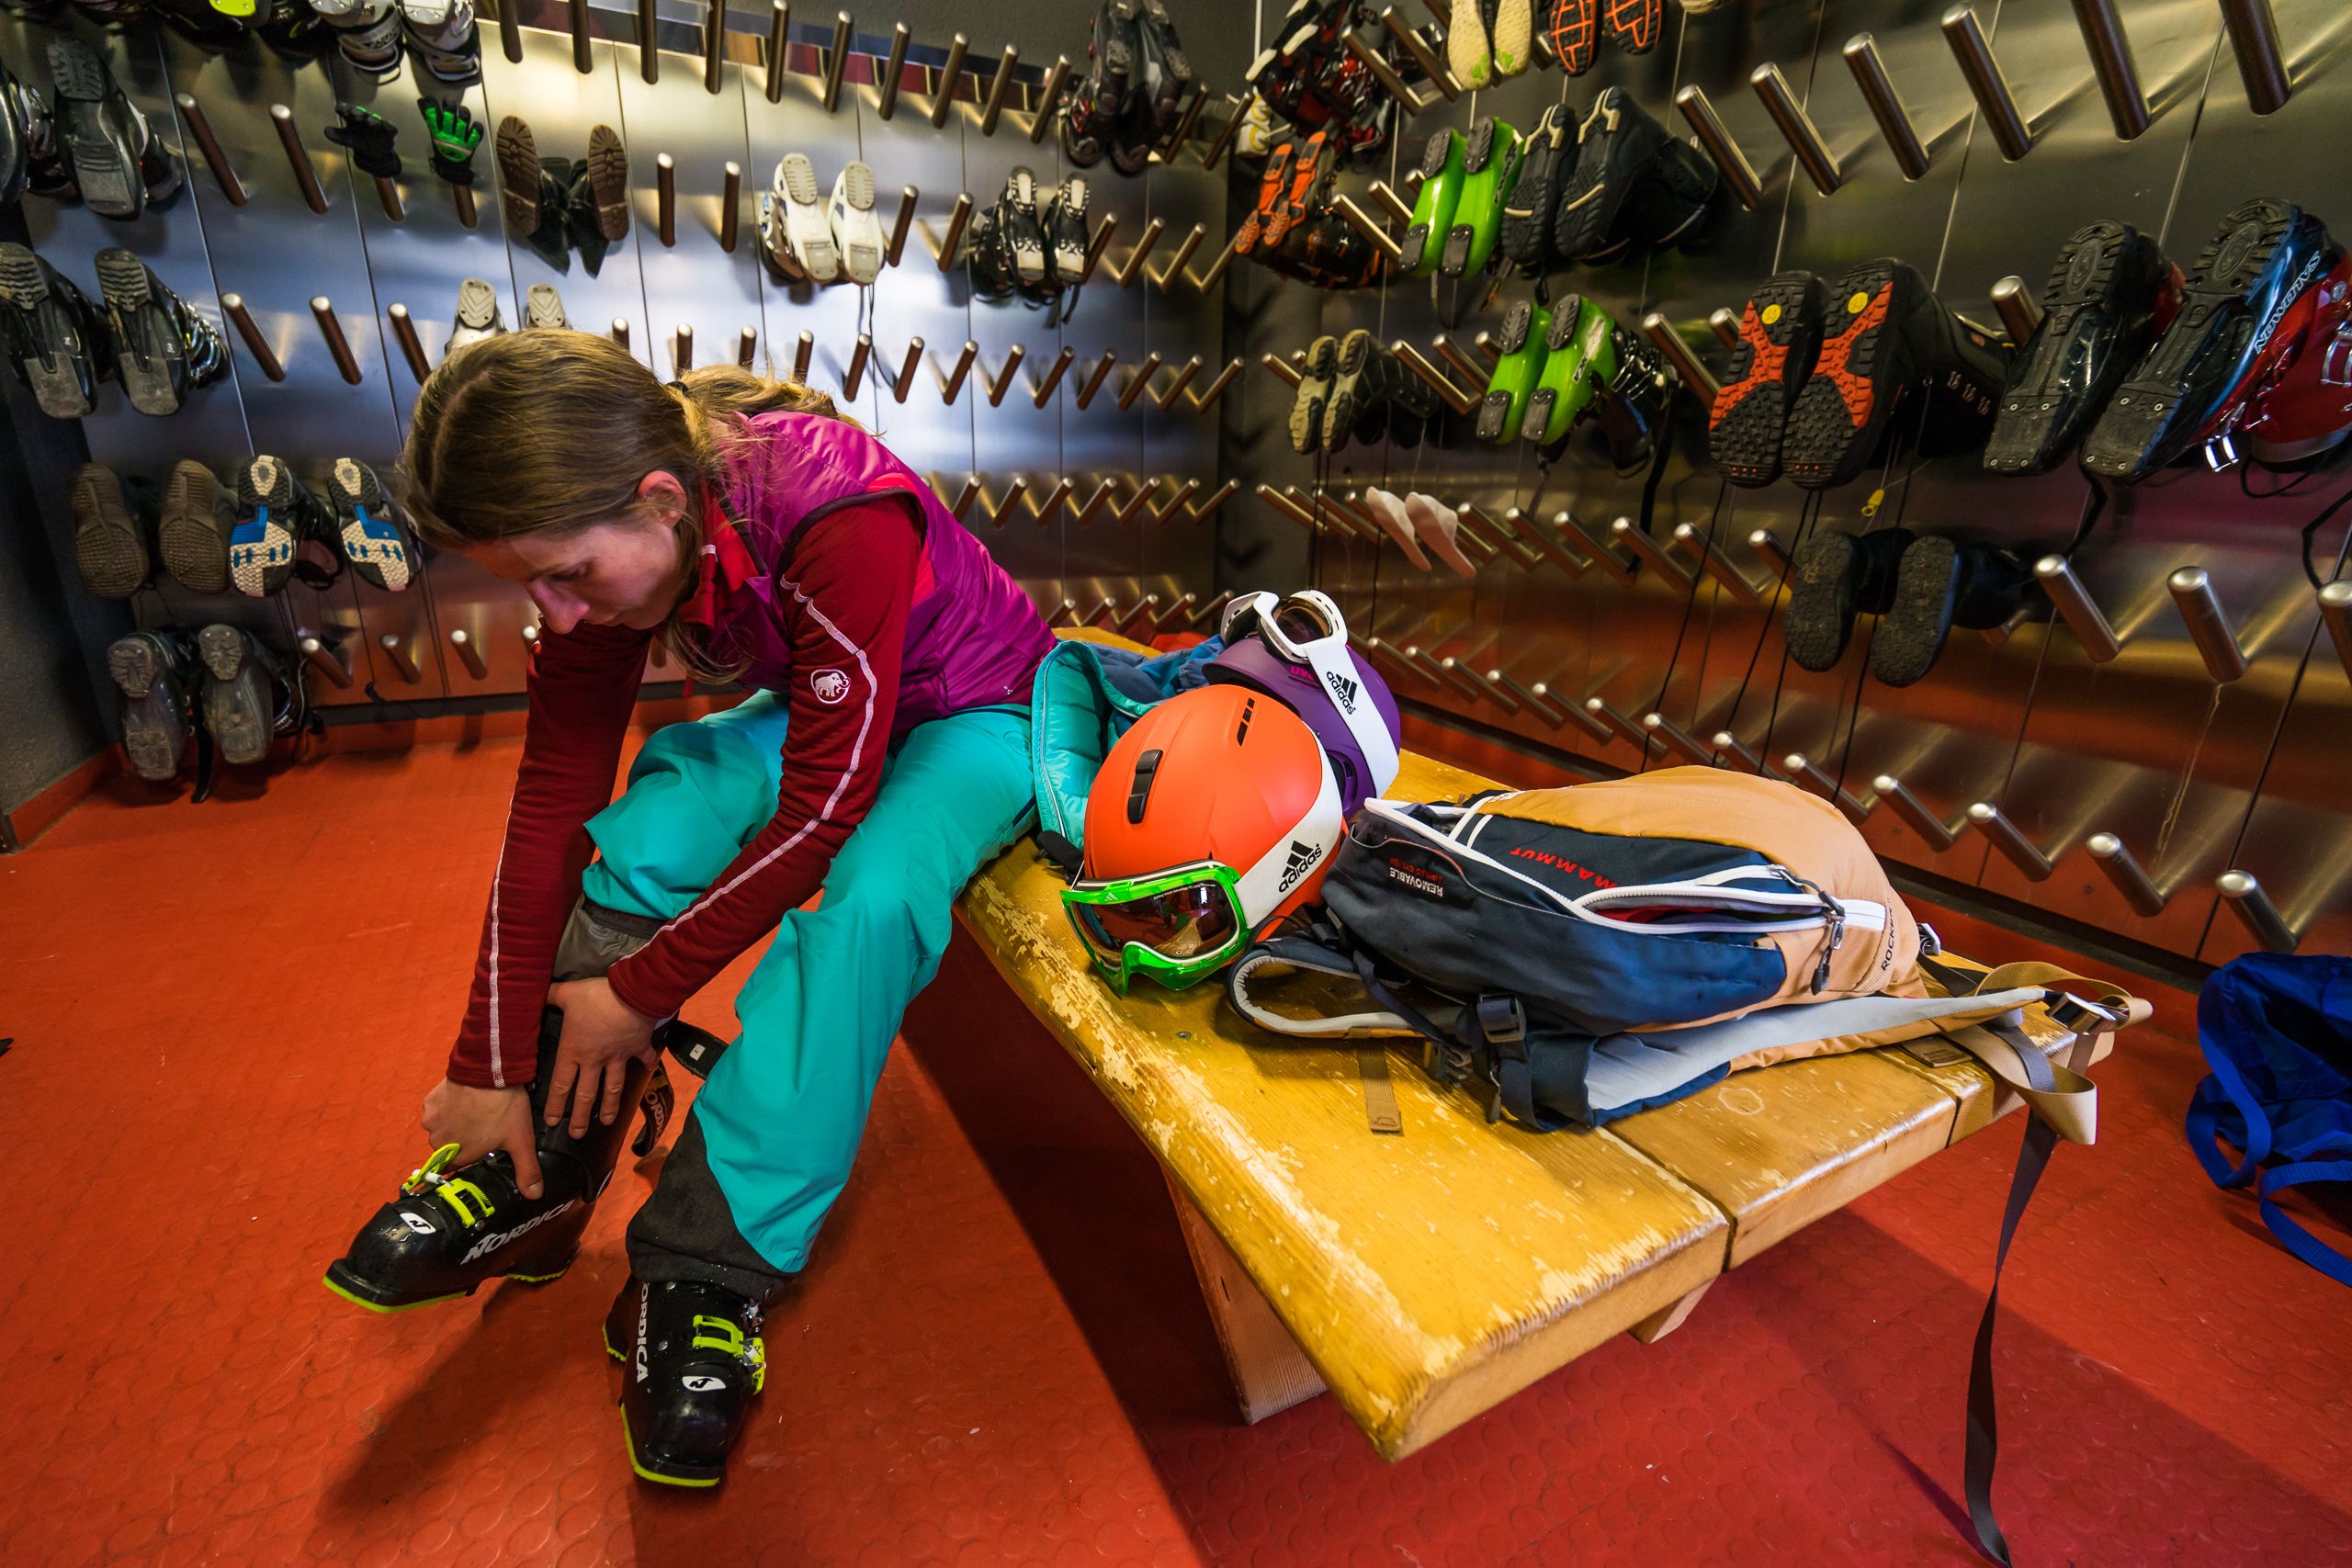 Pardon Een hekel hebben aan Geleerde De grote skischoenen gebruiksaanwijzing - Wintersport weblog